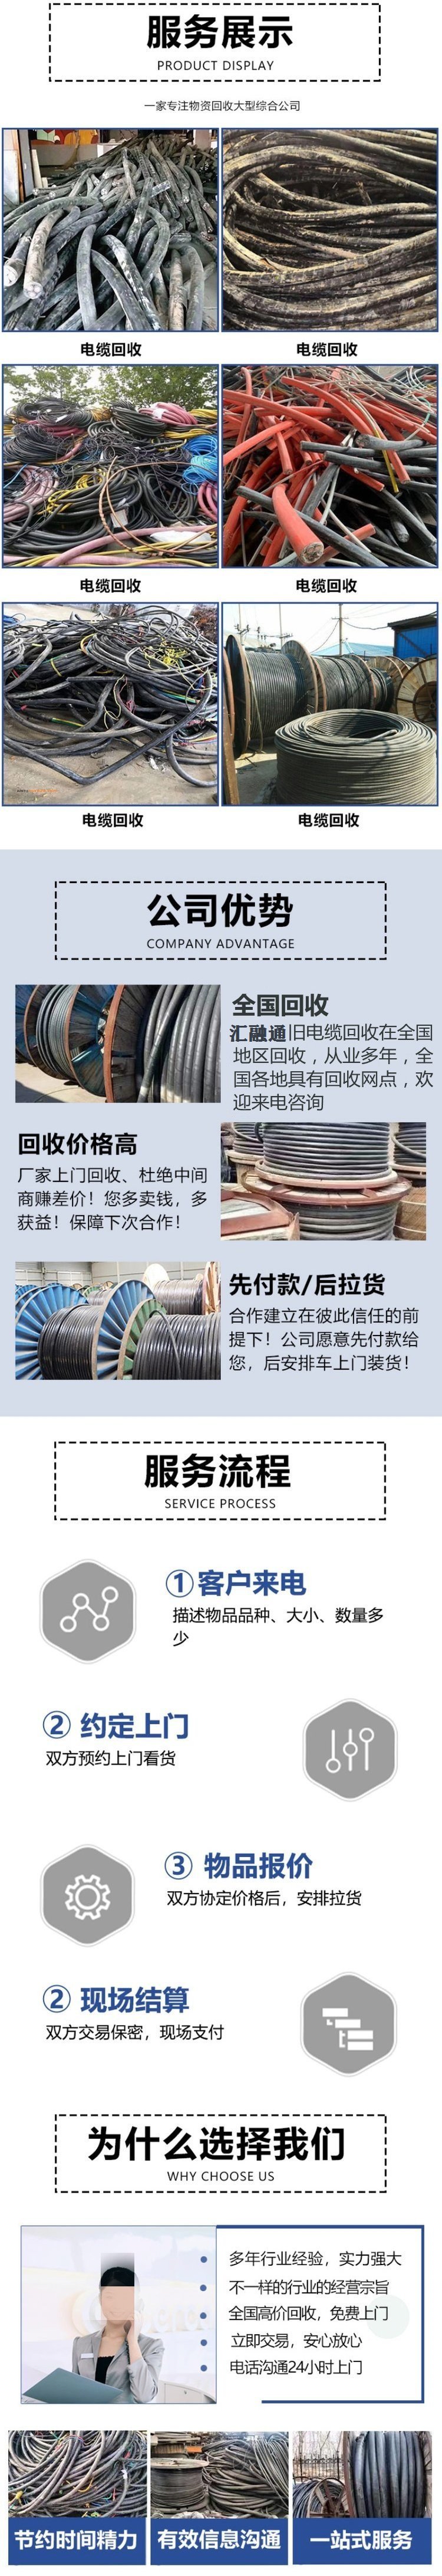 广州荔湾区配电房拆除机器设备回收商家收购服务